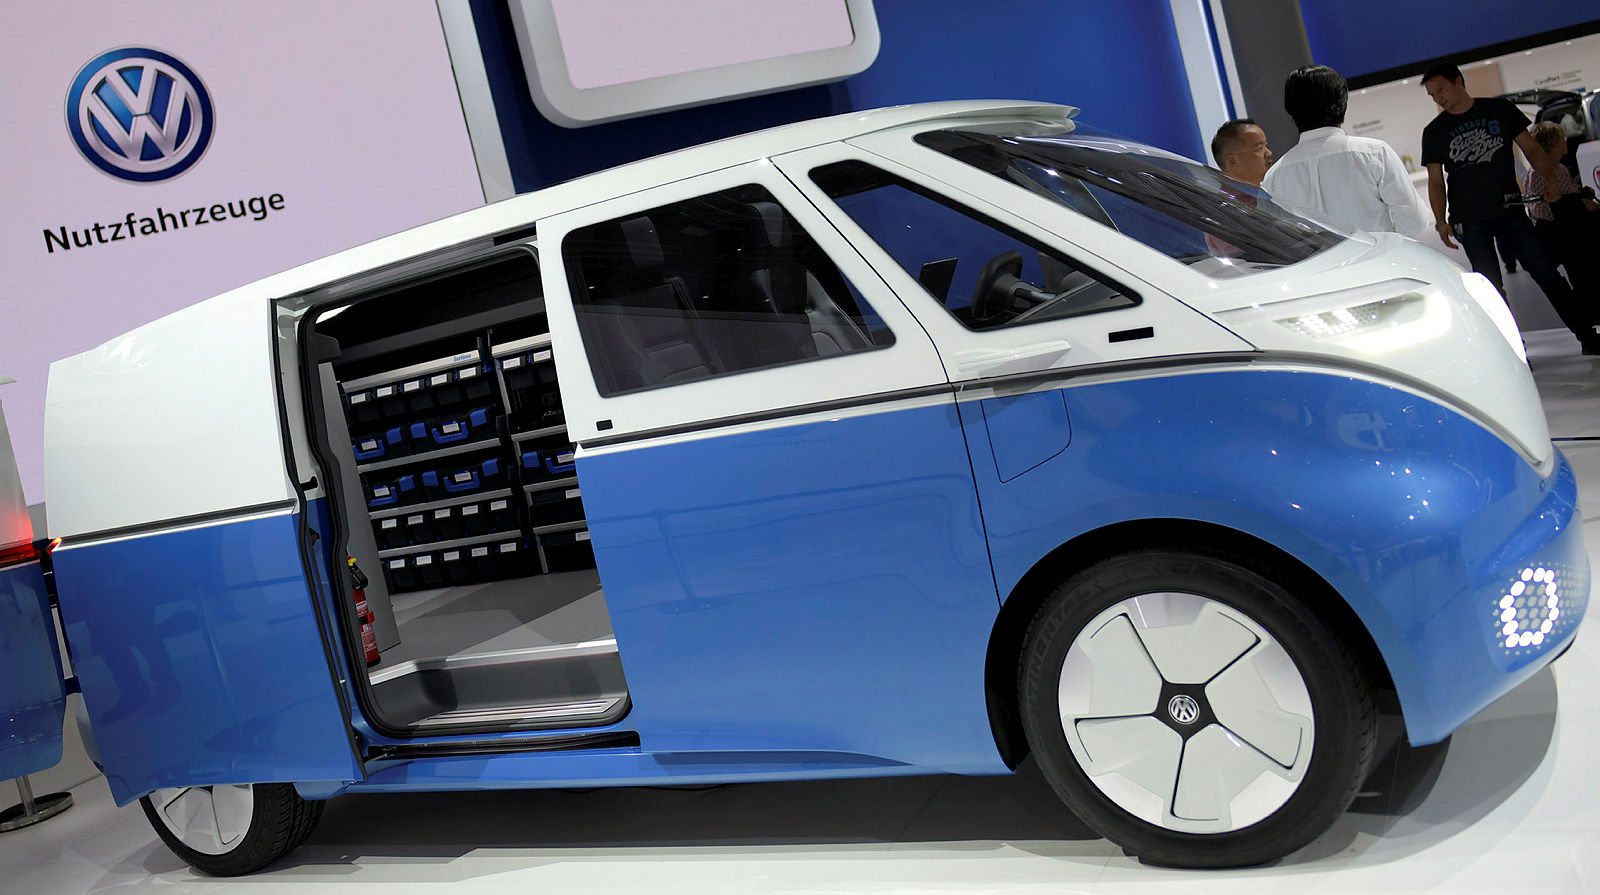 Volkswagen yeni panelvanı I.D. BUZZ tanıtıldı! Volkswagen I.D. BUZZ’un özellikleri neler?